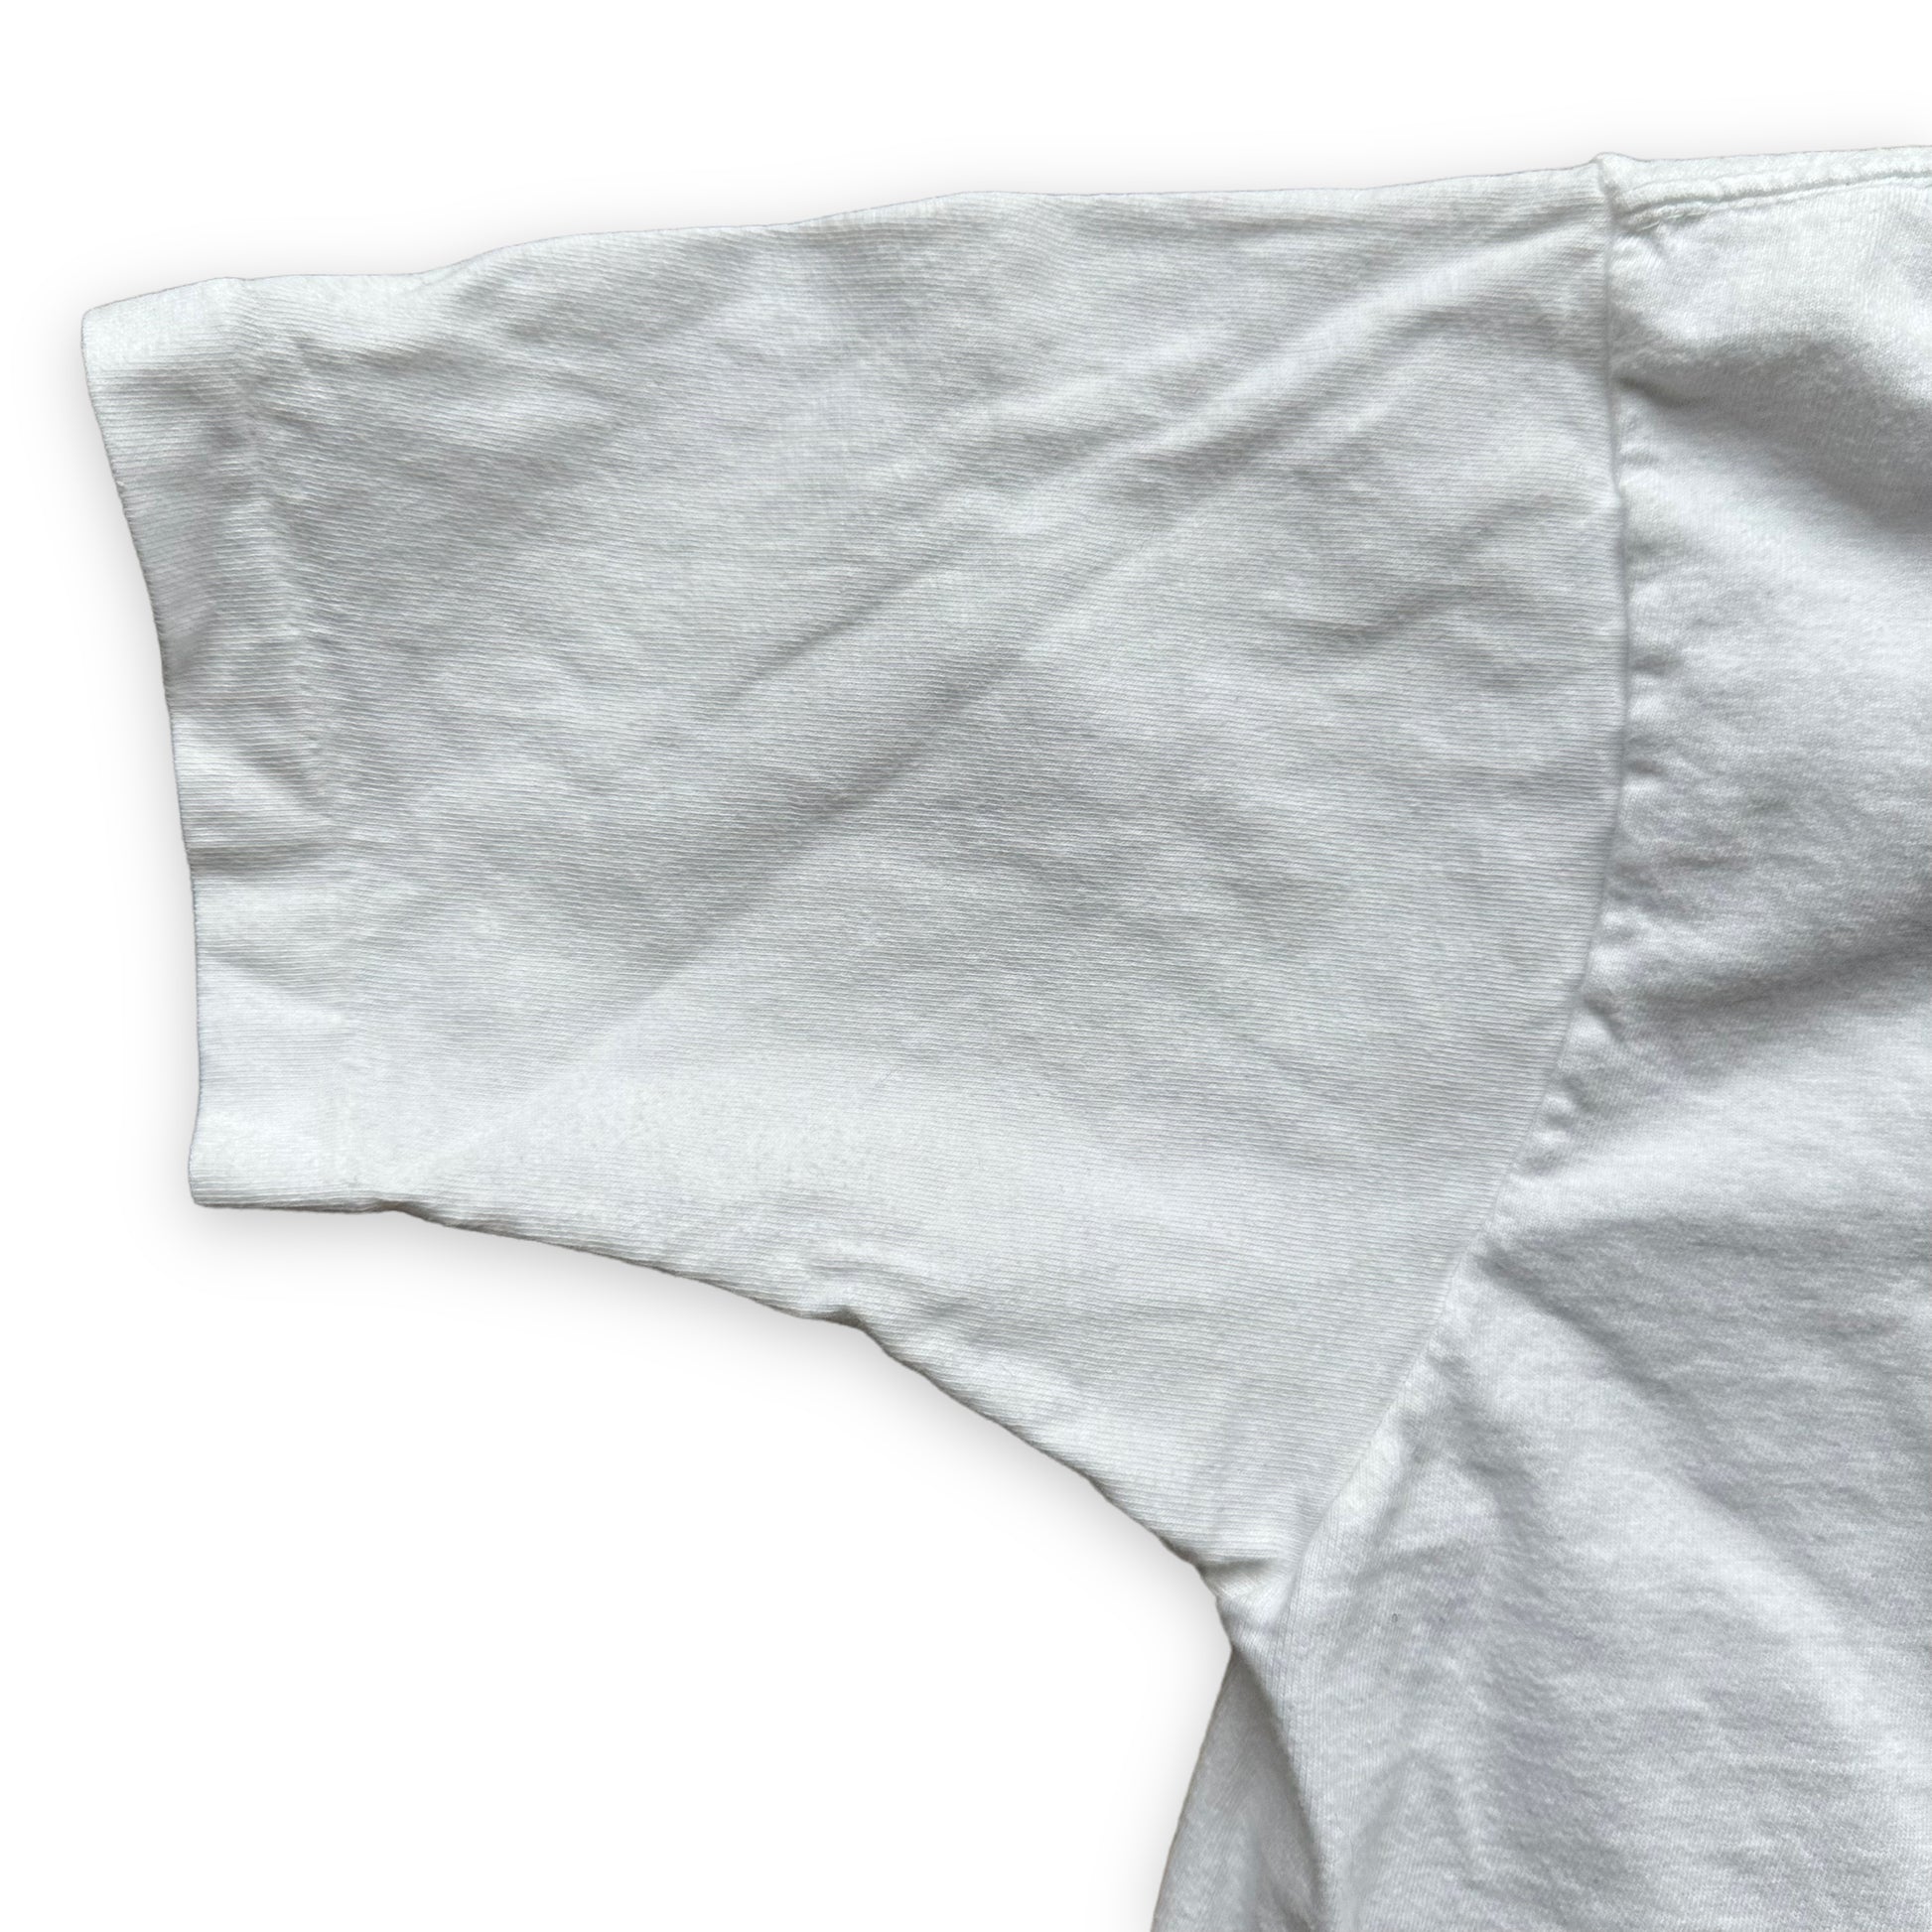 Single Stitch Sleeve on Vintage Royal Comfort Pocket Tee Shirt SZ M | Vintage Blank Tees Seattle | Vintage T-Shirts Seattle